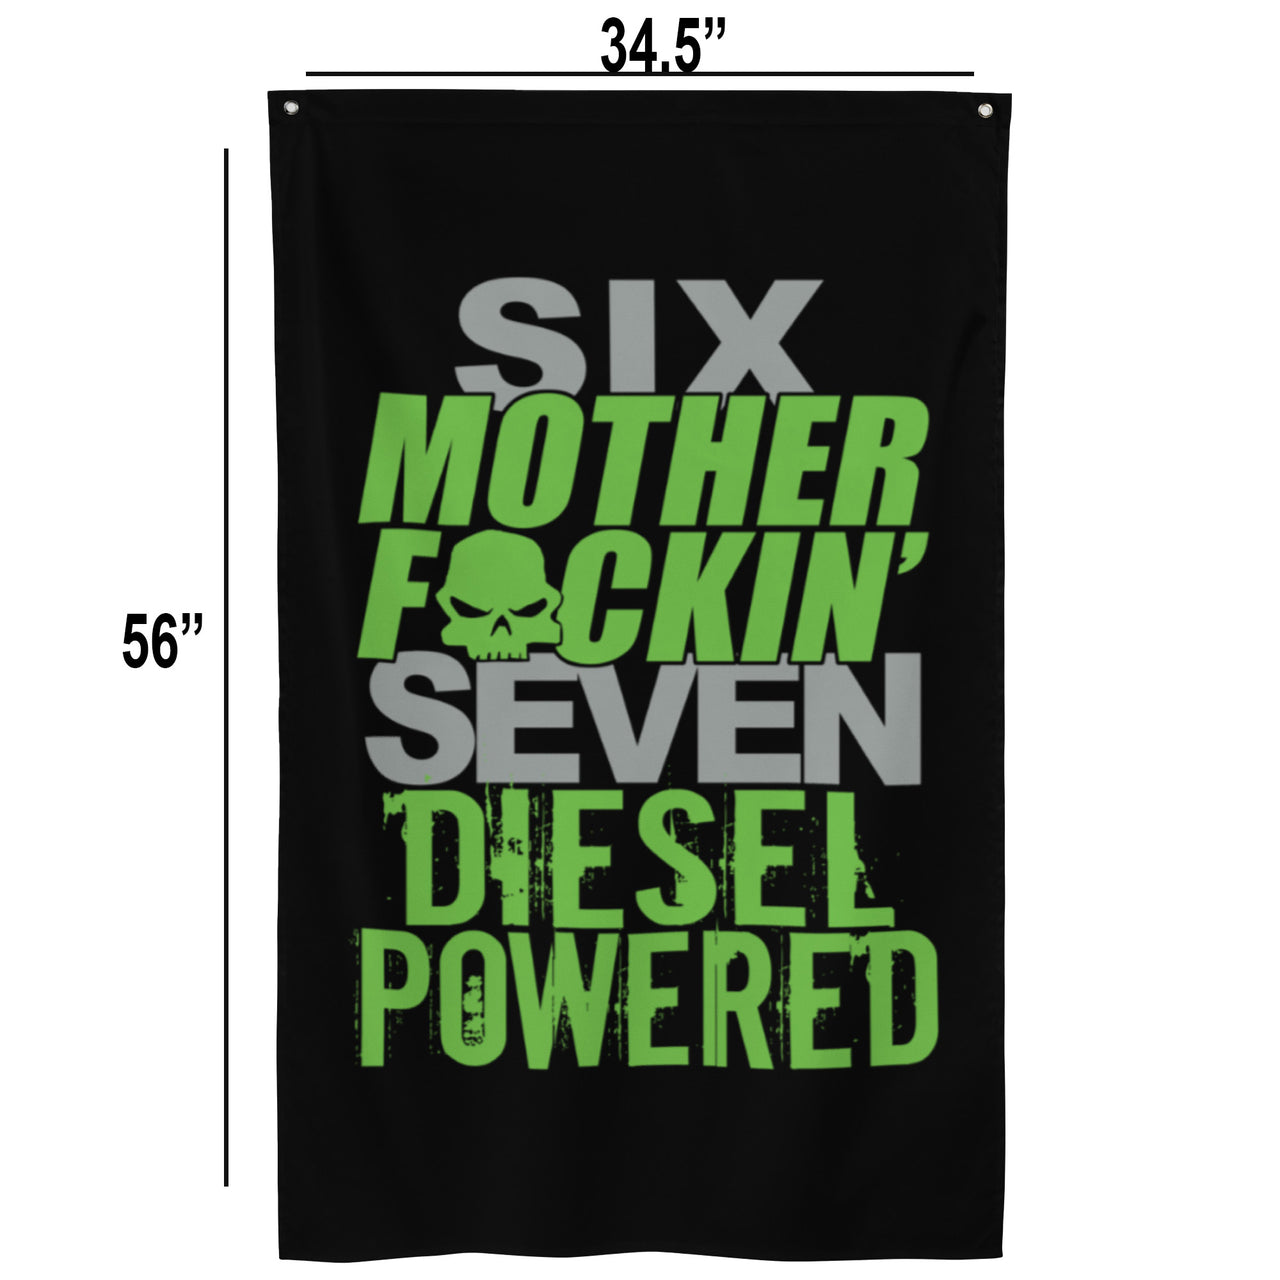 6.7 Power Stroke Diesel Flag dimensions